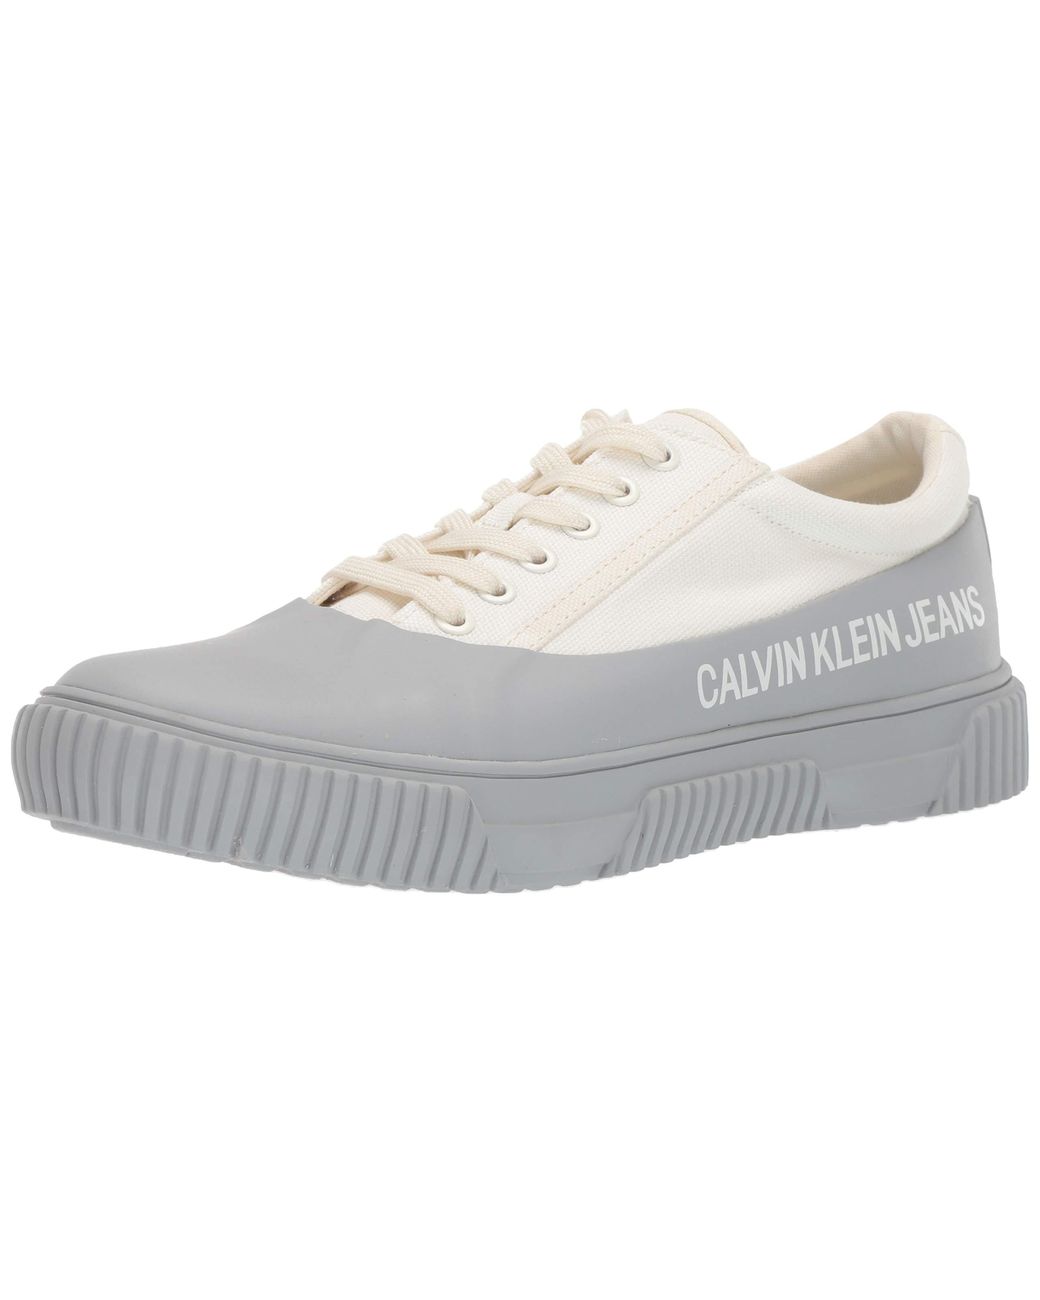 Calvin Klein Ck Jeans Monte Shoe in 